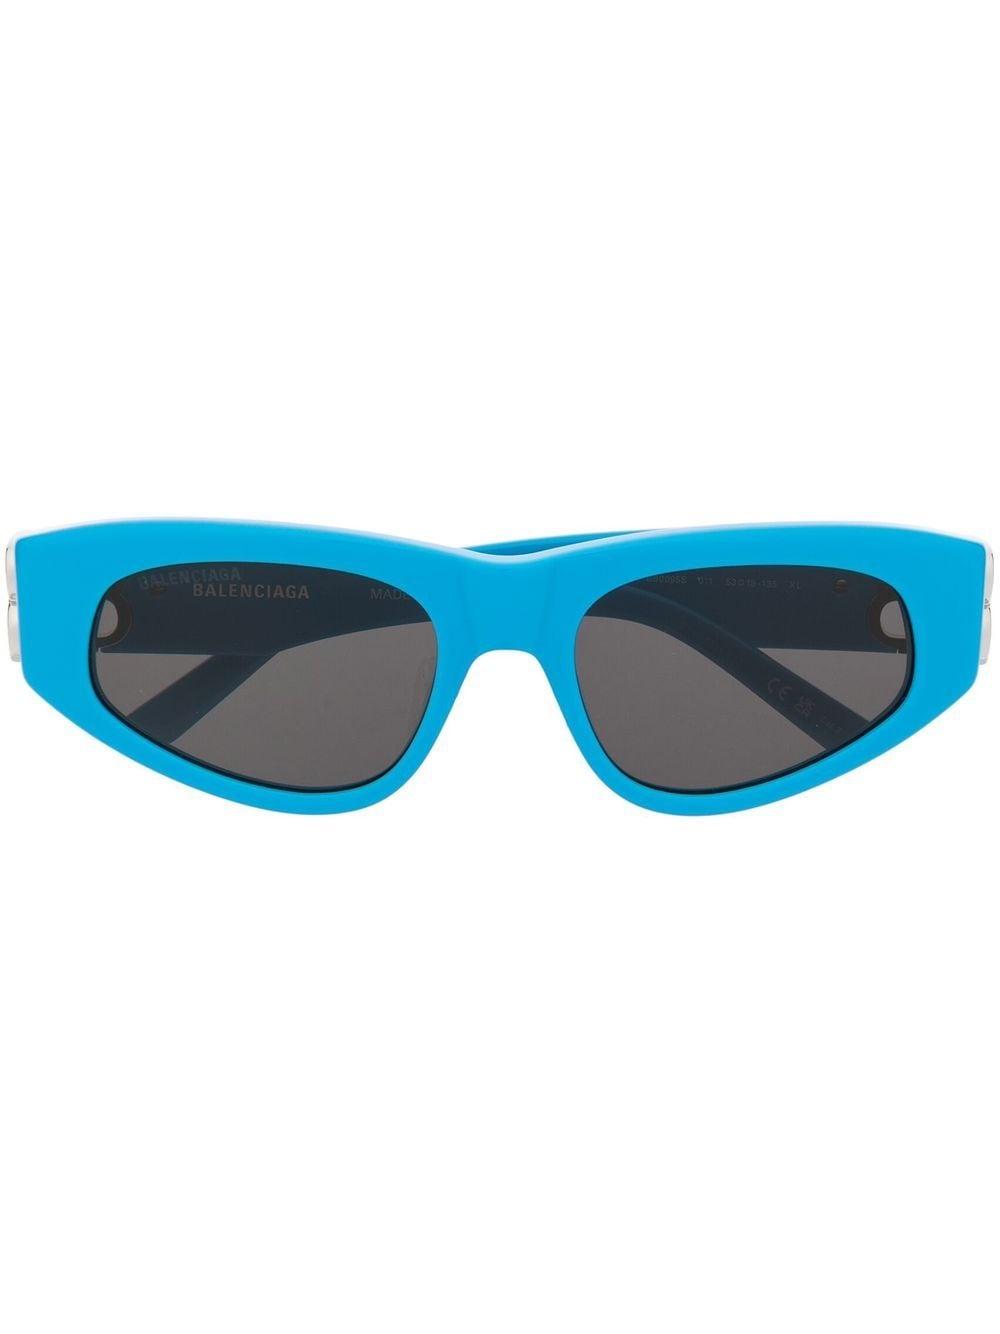 Balenciaga Dynasty D-frame Sunglasses in Blue | Lyst